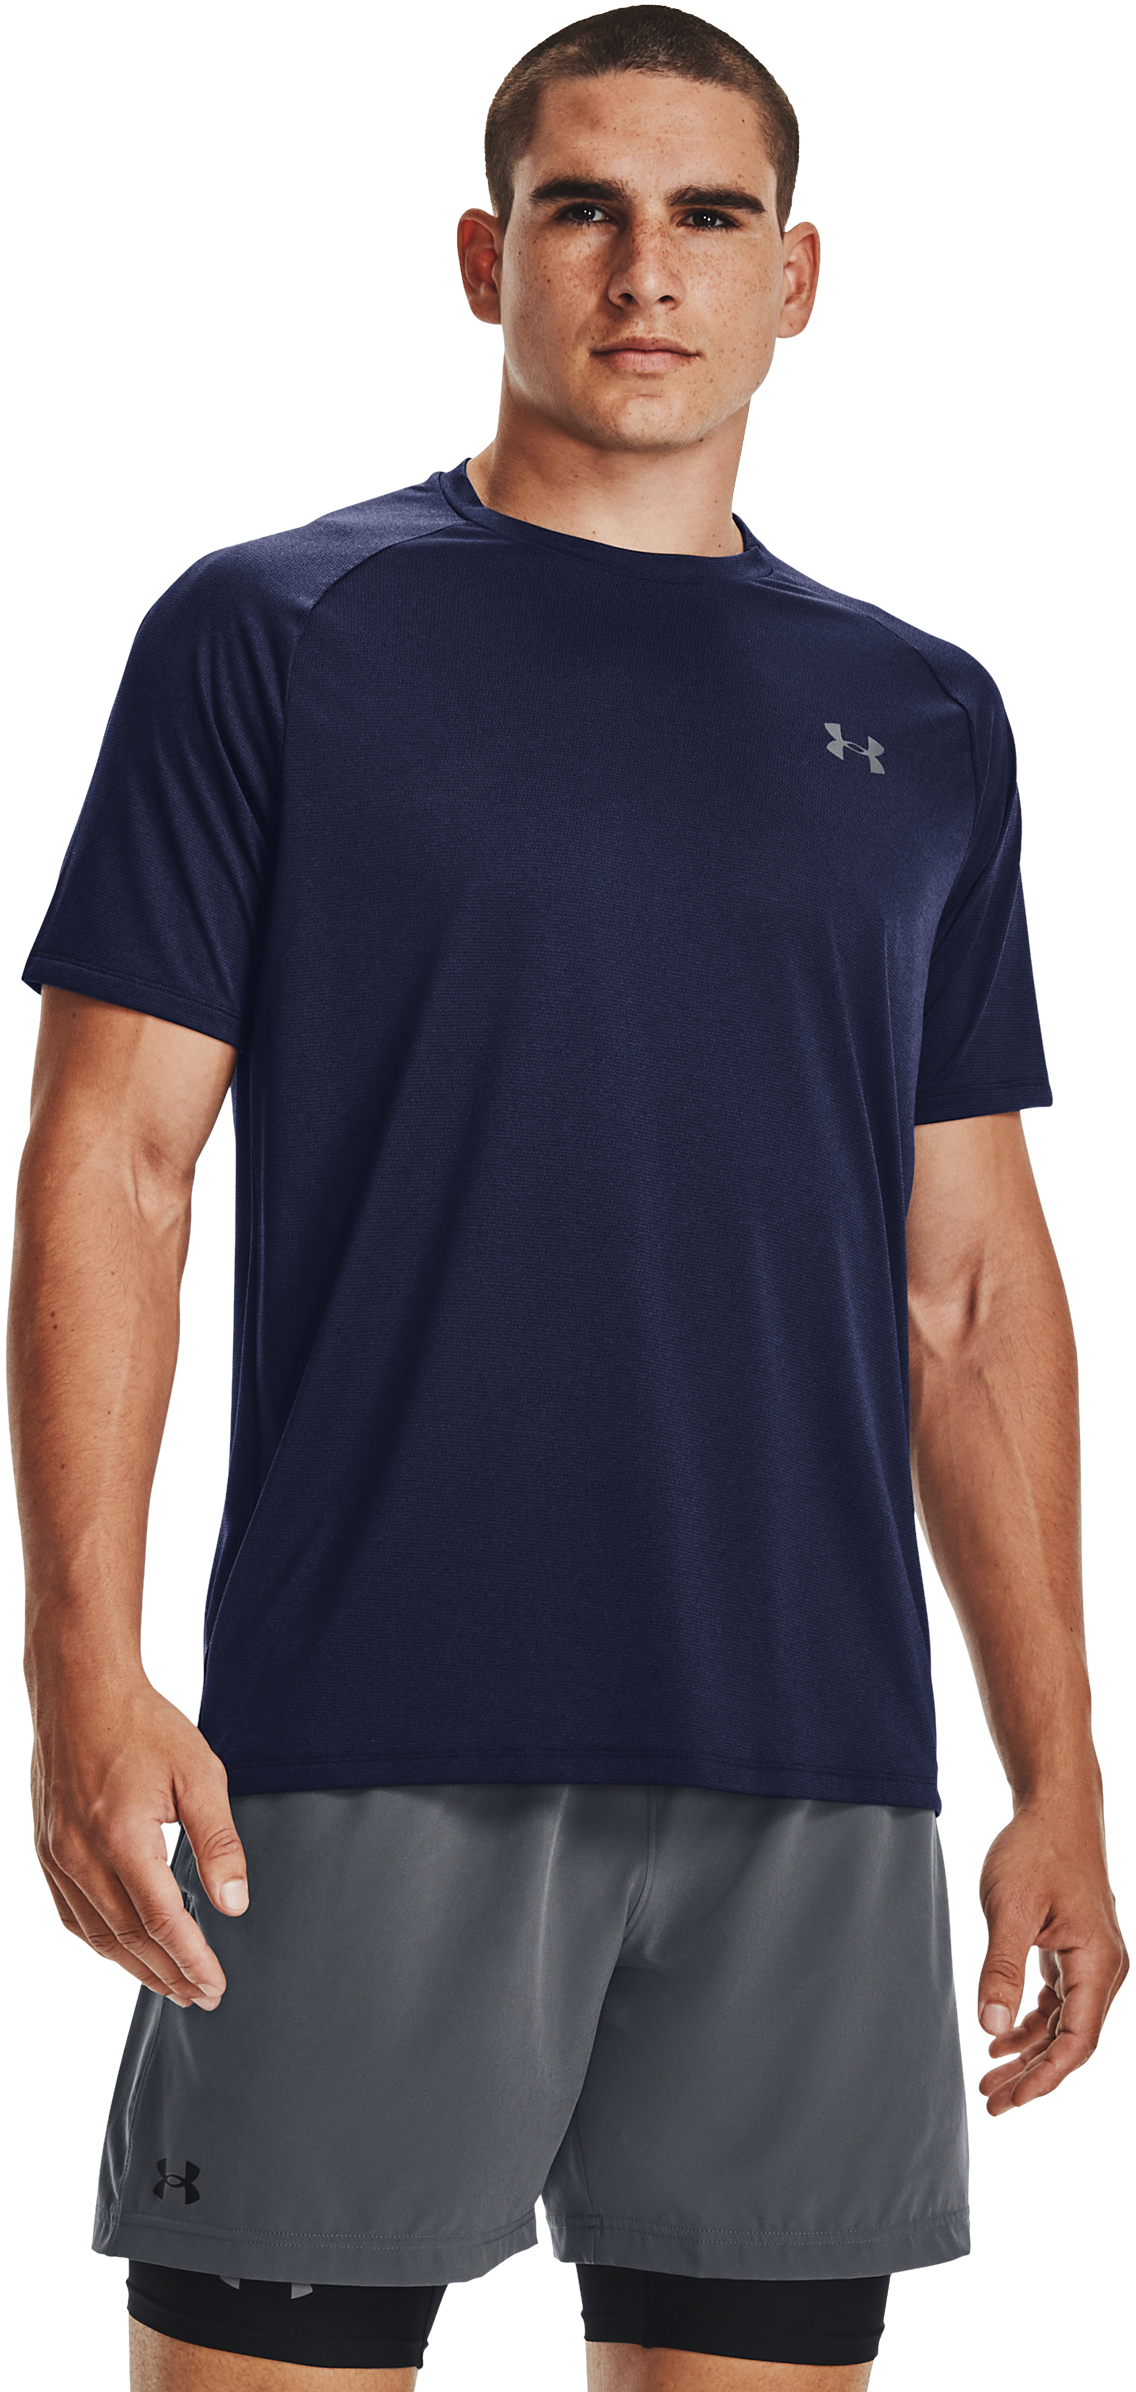 Under Armour UA Tech 2.0 Short-Sleeve T-Shirt for Men - Midnight Navy/Pitch Gray - XLT